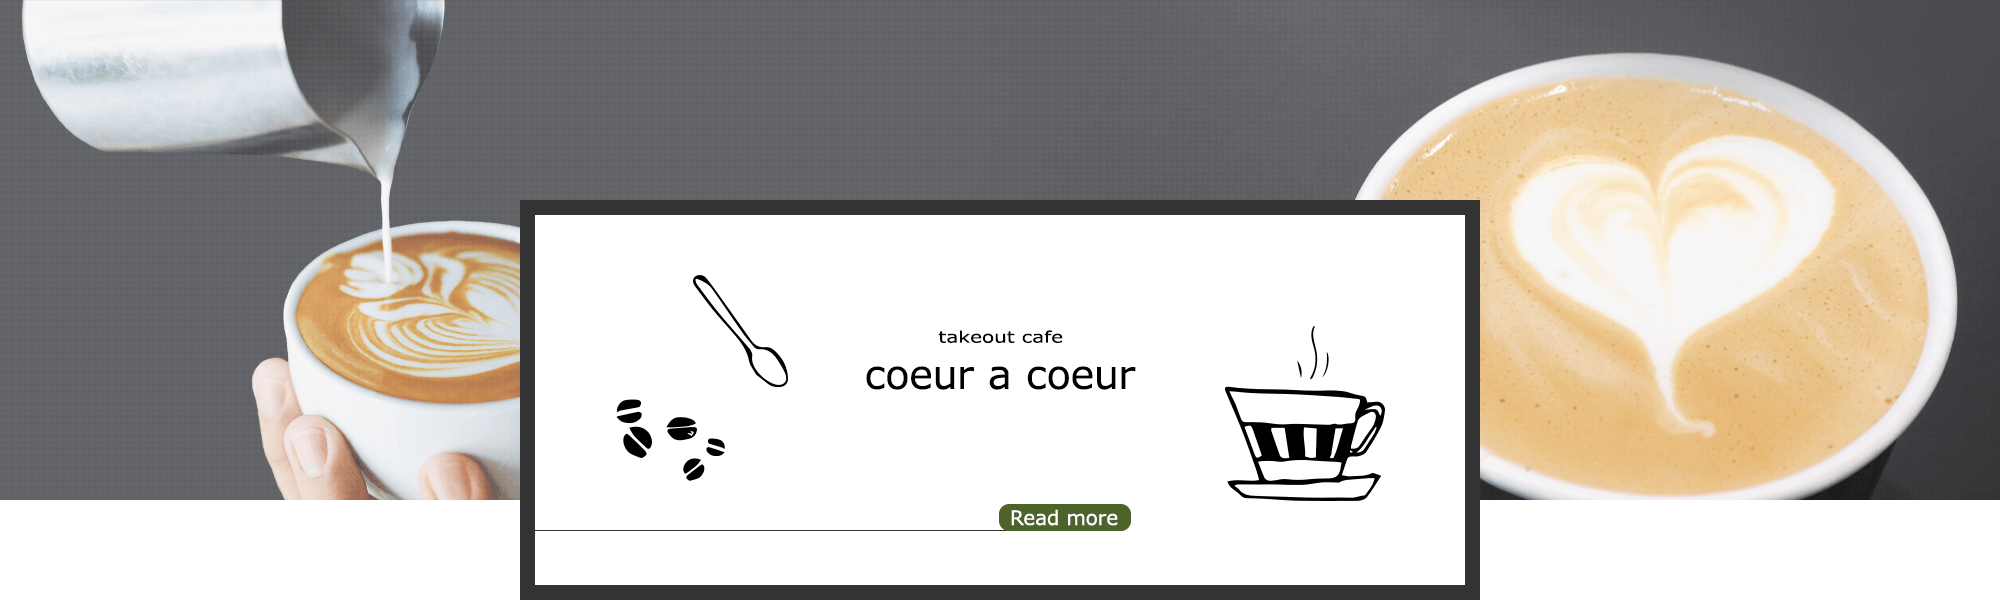 bnr_coeur-a-coeur_off